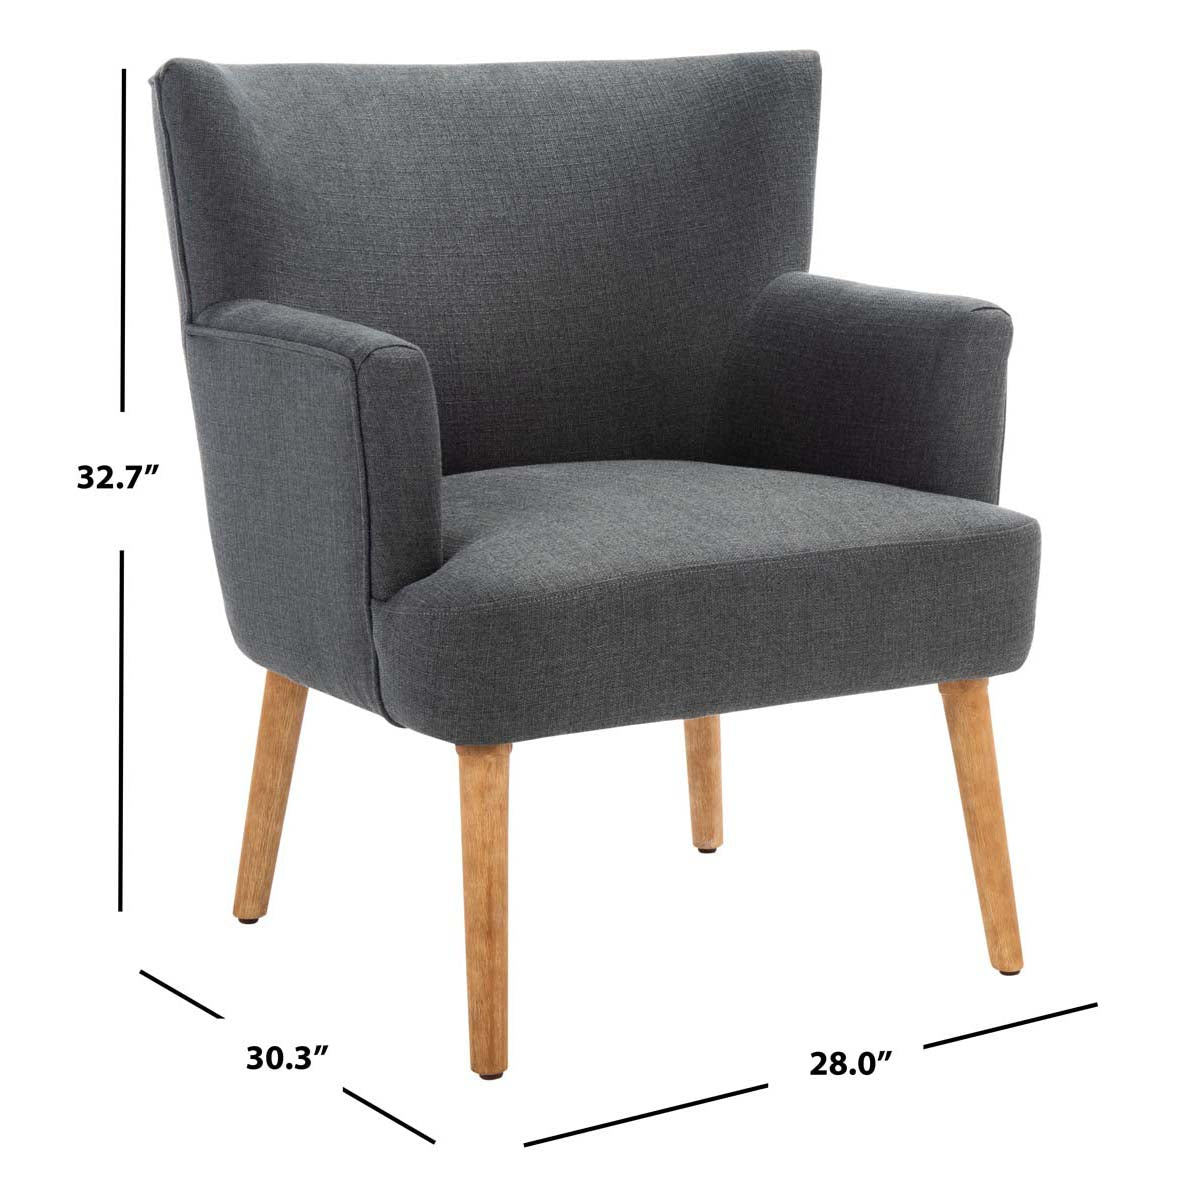 Safavieh Delfino Accent Chair , ACH4009 - Dark Grey